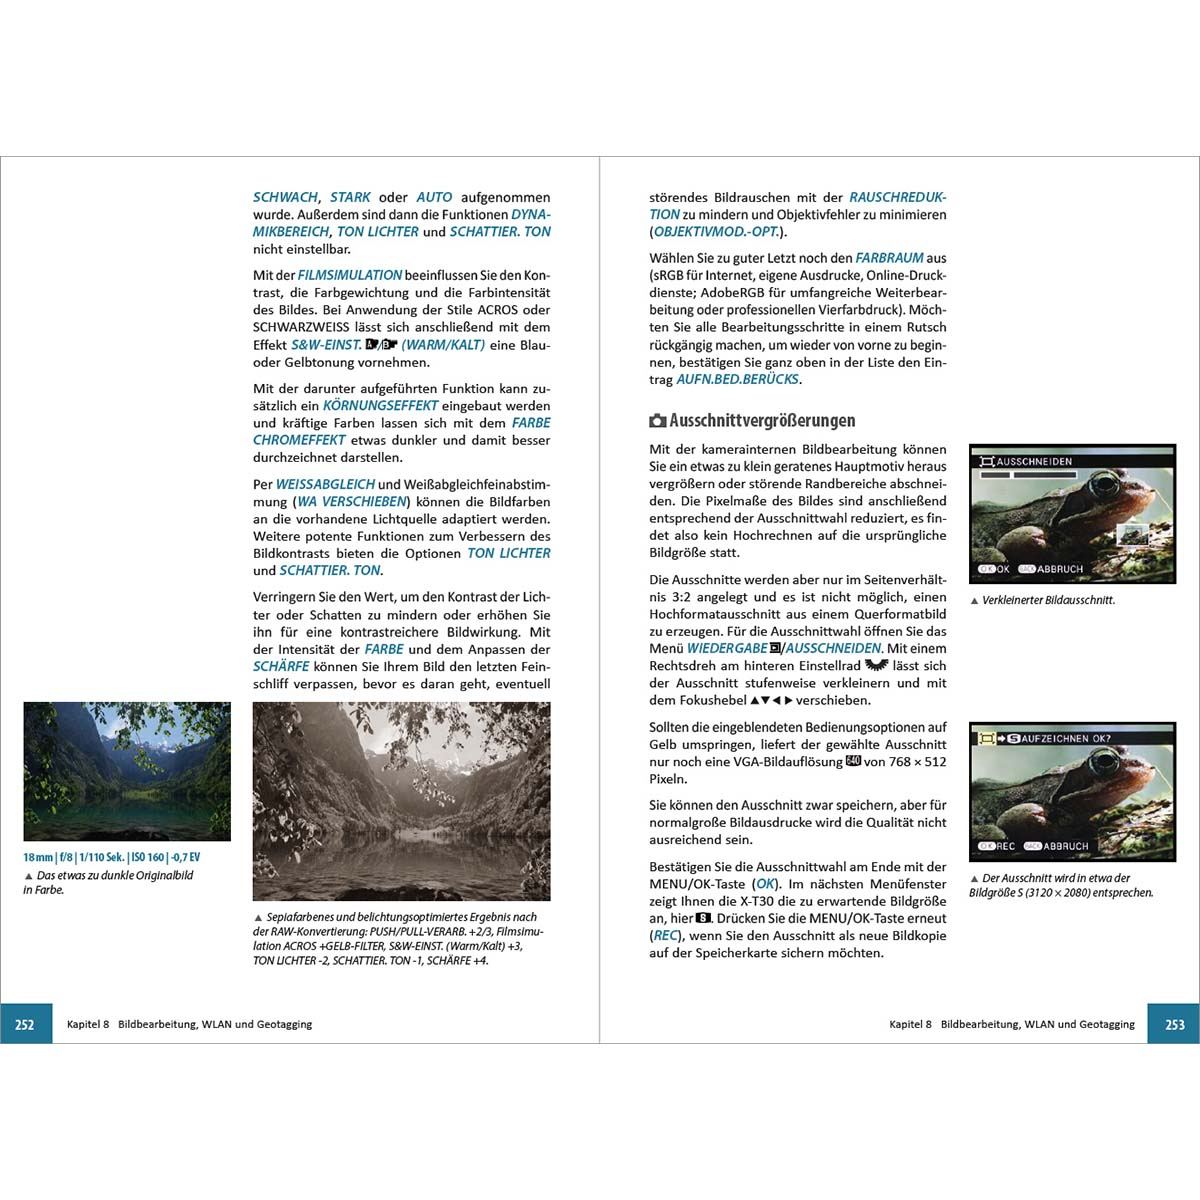 Fujifilm X-T30 - Das umfangreiche Praxisbuch Ihrer zu Kamera